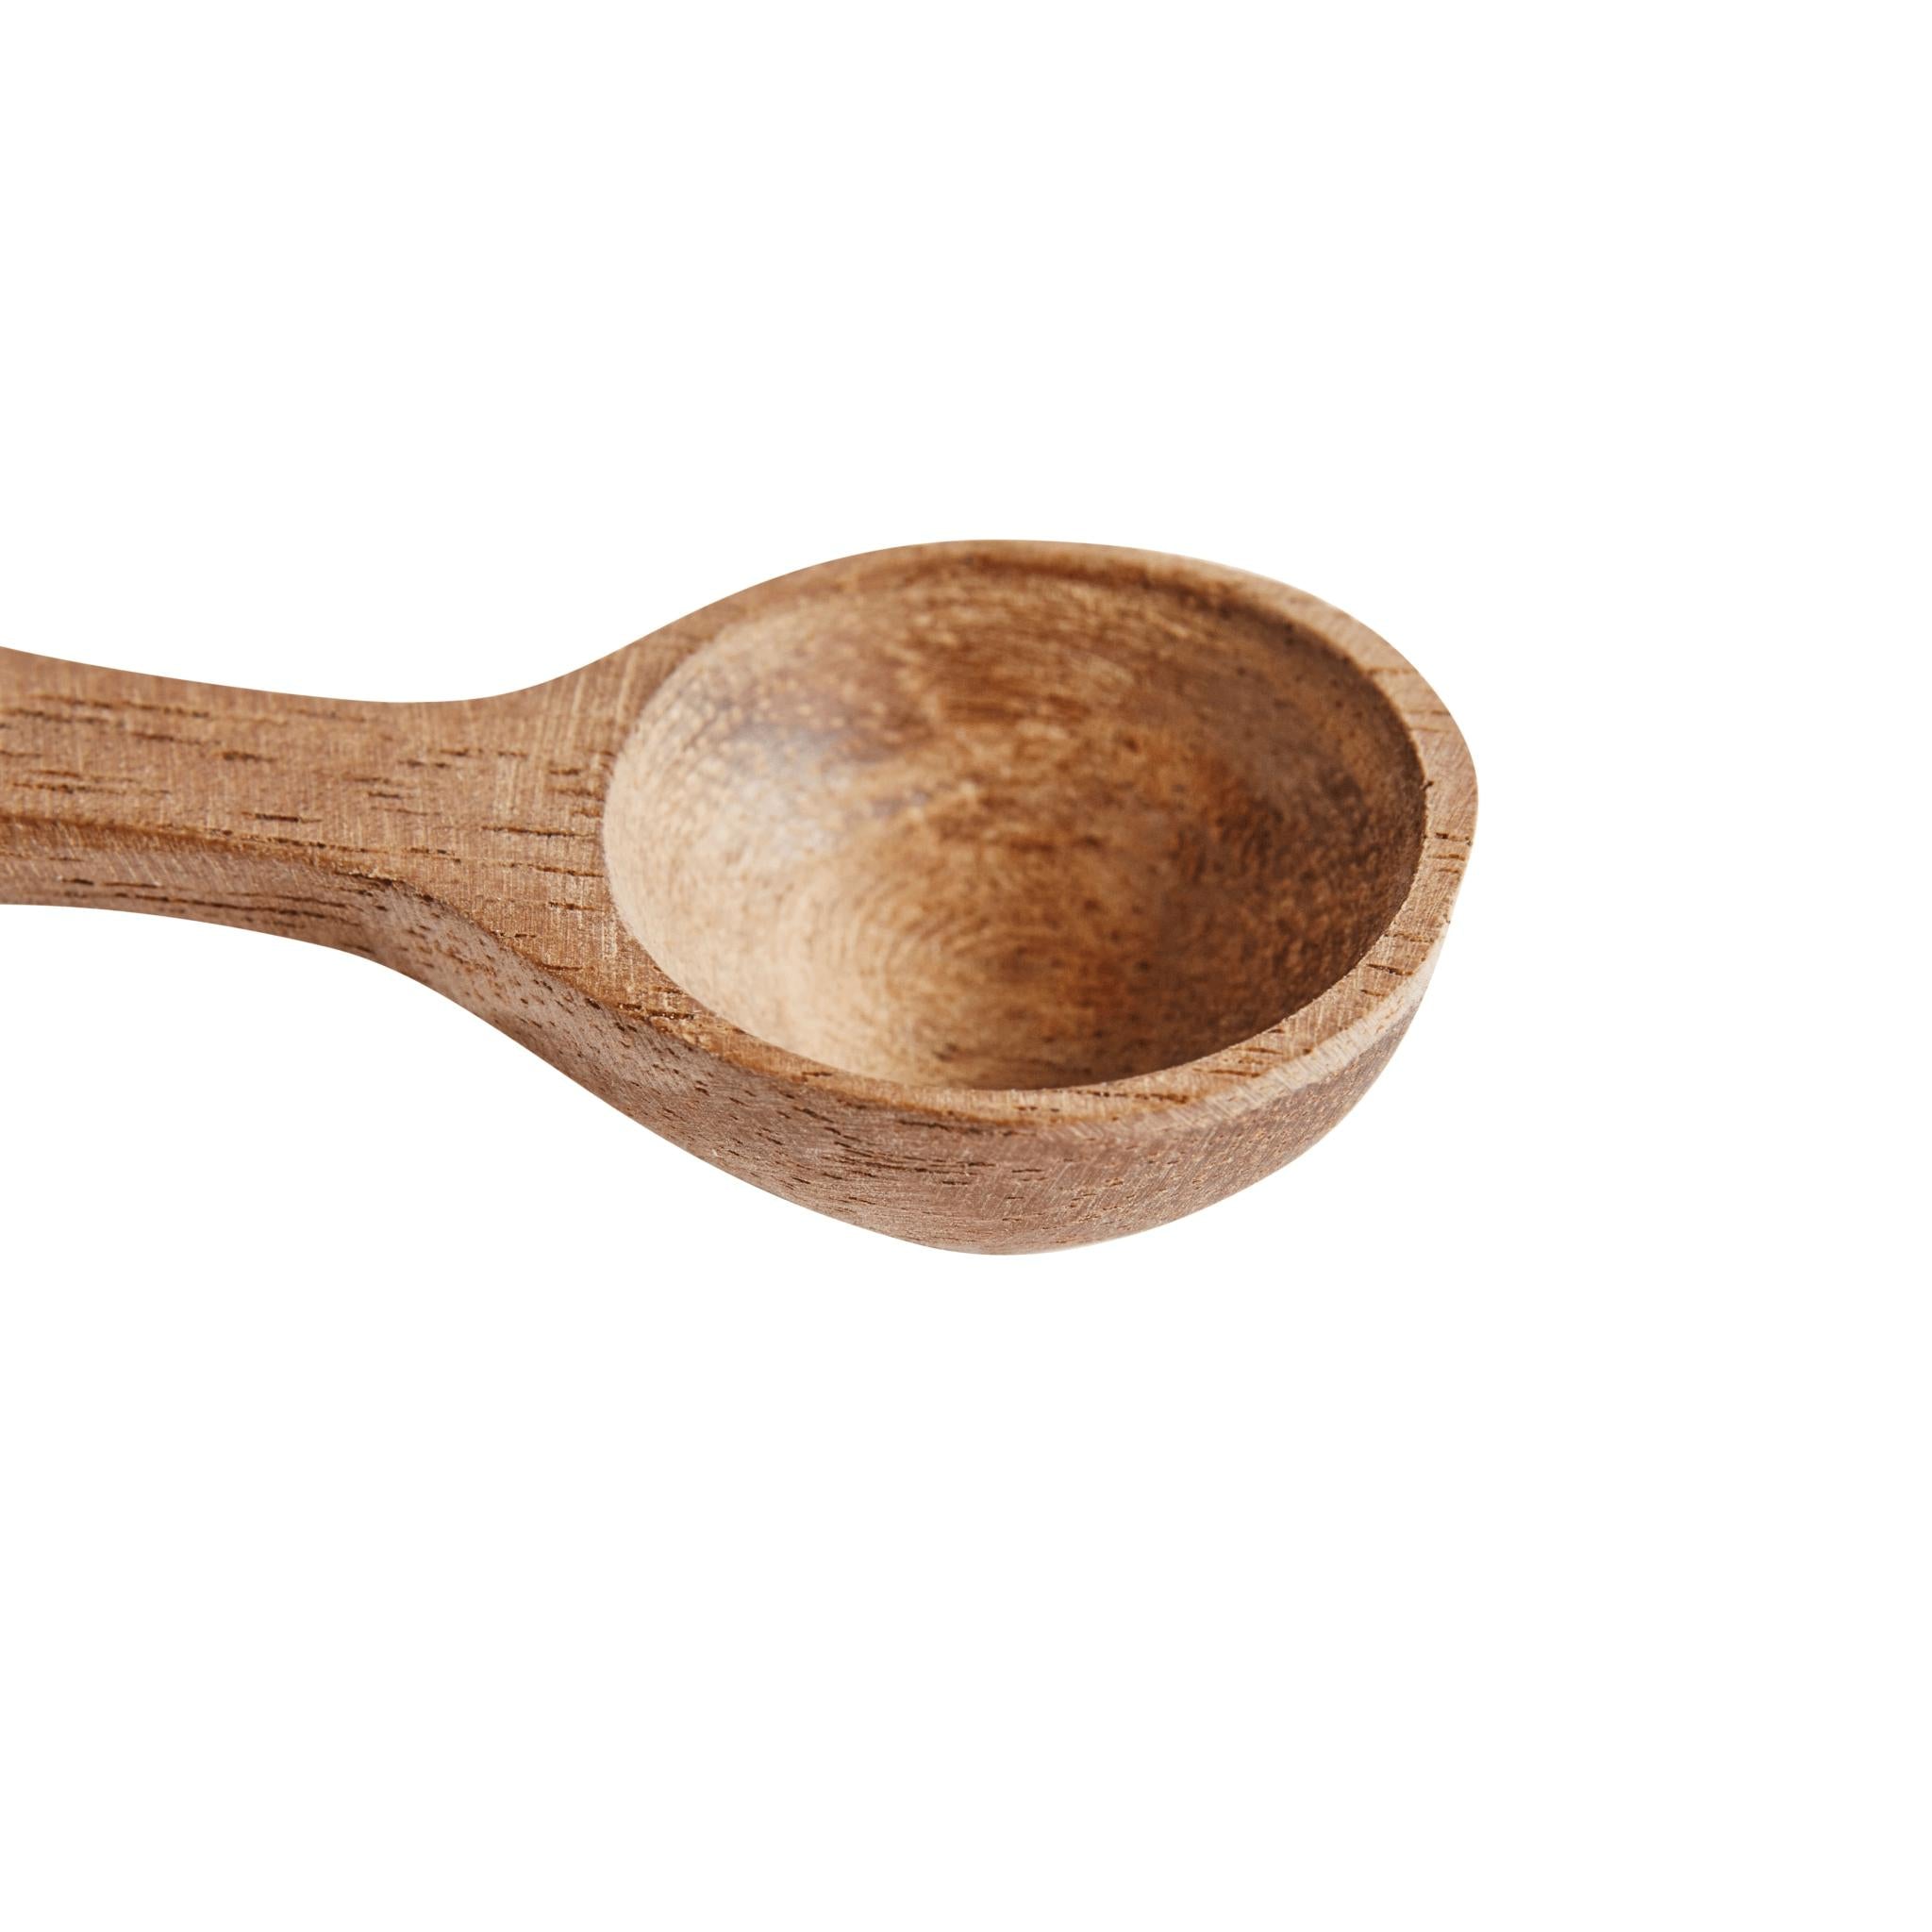 Muubs Salt Spoon Teak 4 Pcs, 6cm